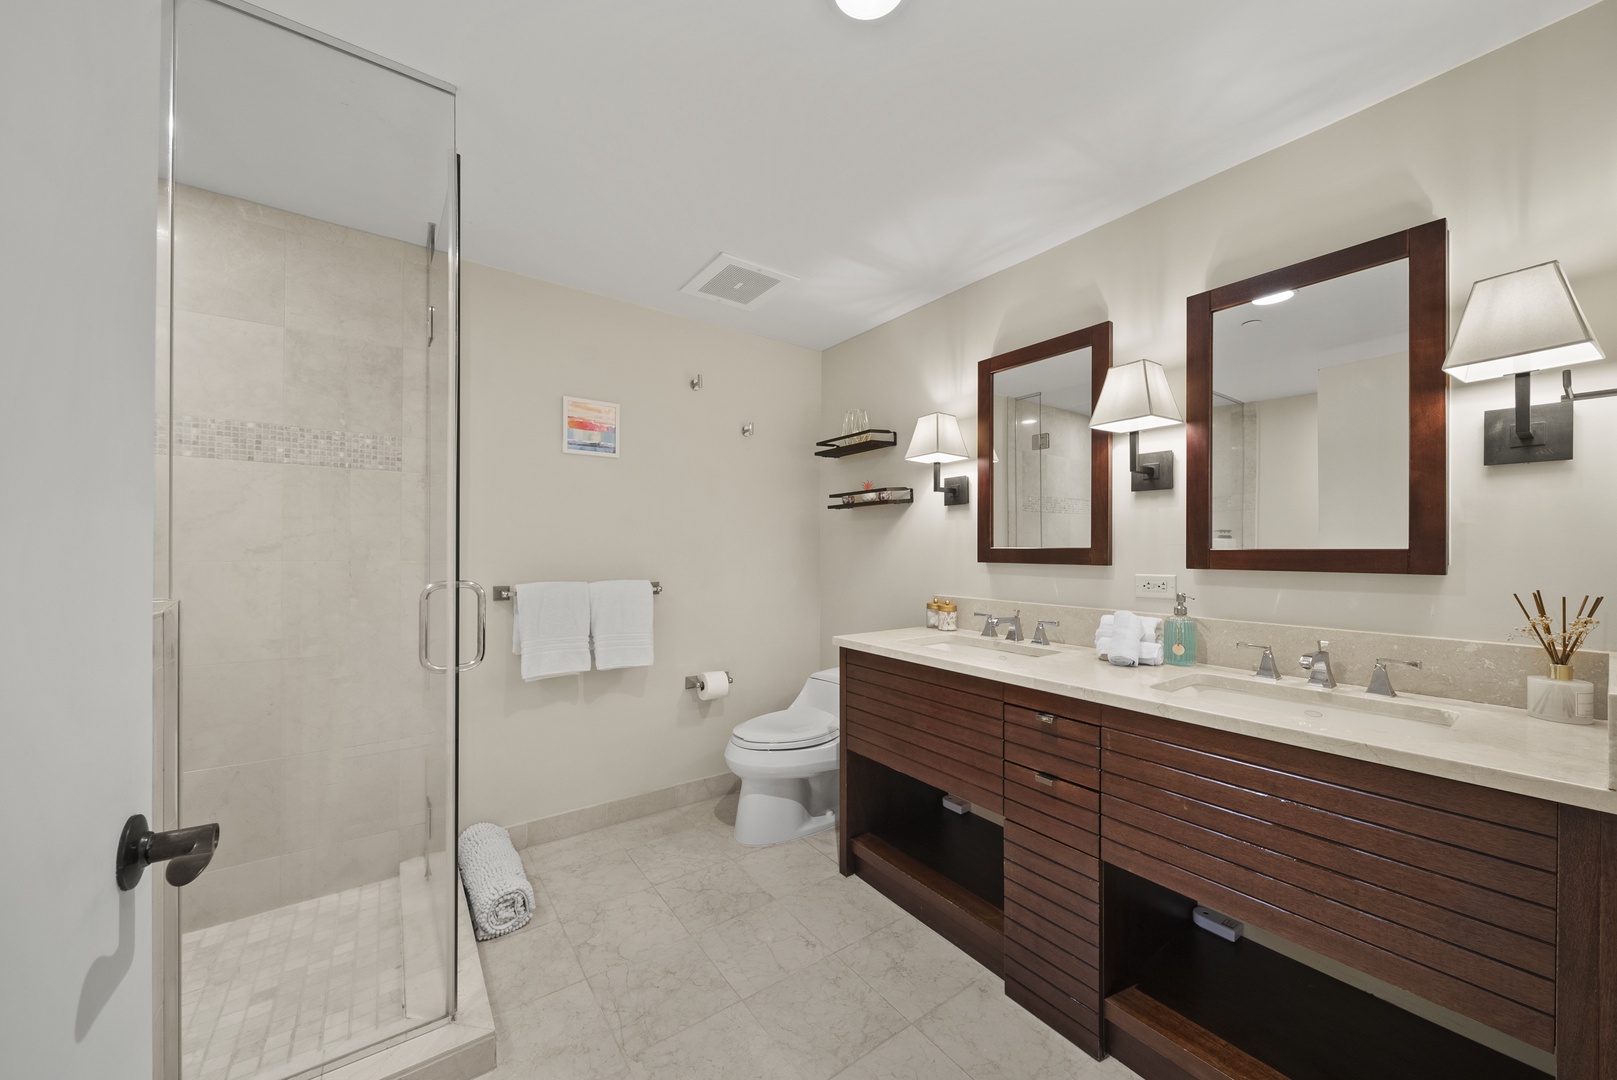 Honolulu Vacation Rentals, Watermark Waikiki Unit 901 - The ensuite bathroom is spaciously designed with dual sink vanity.